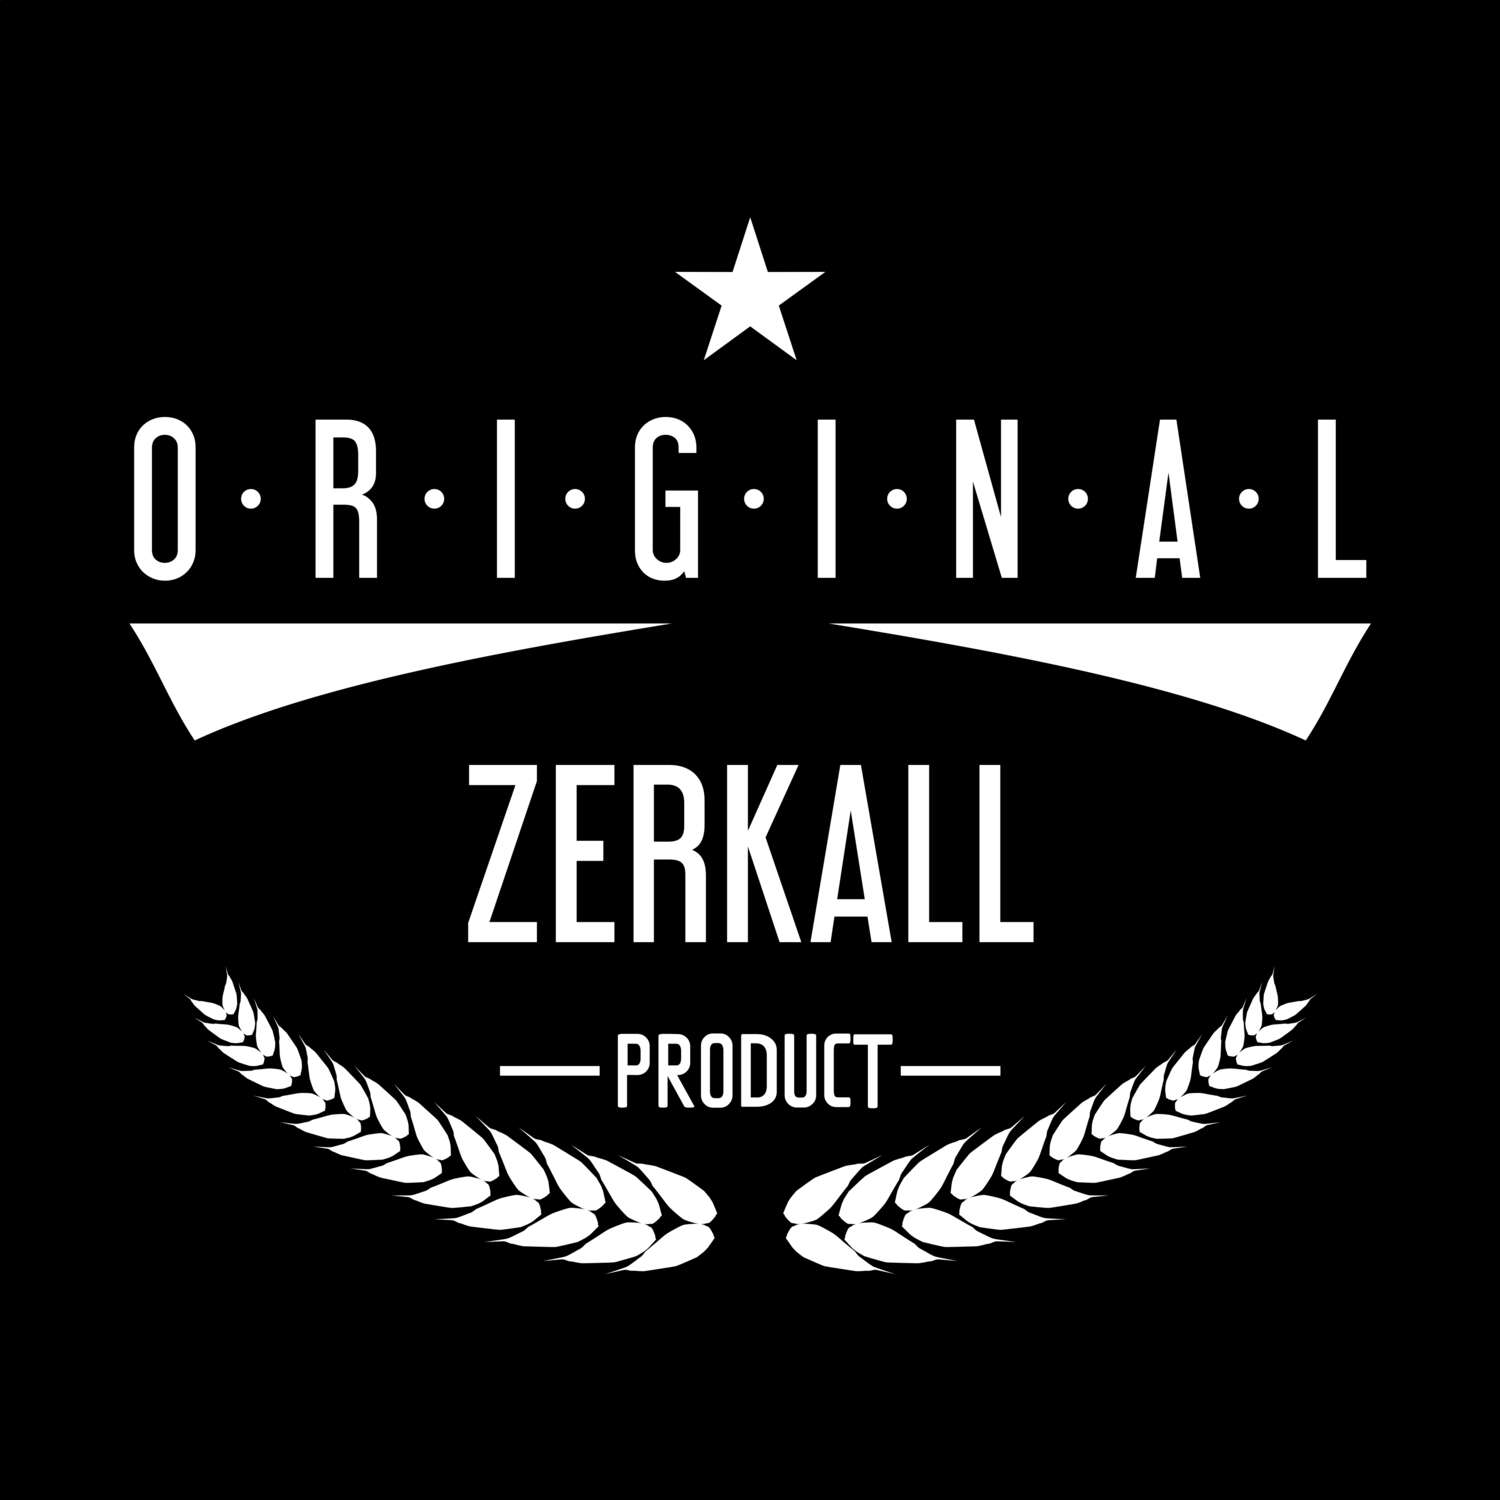 Zerkall T-Shirt »Original Product«